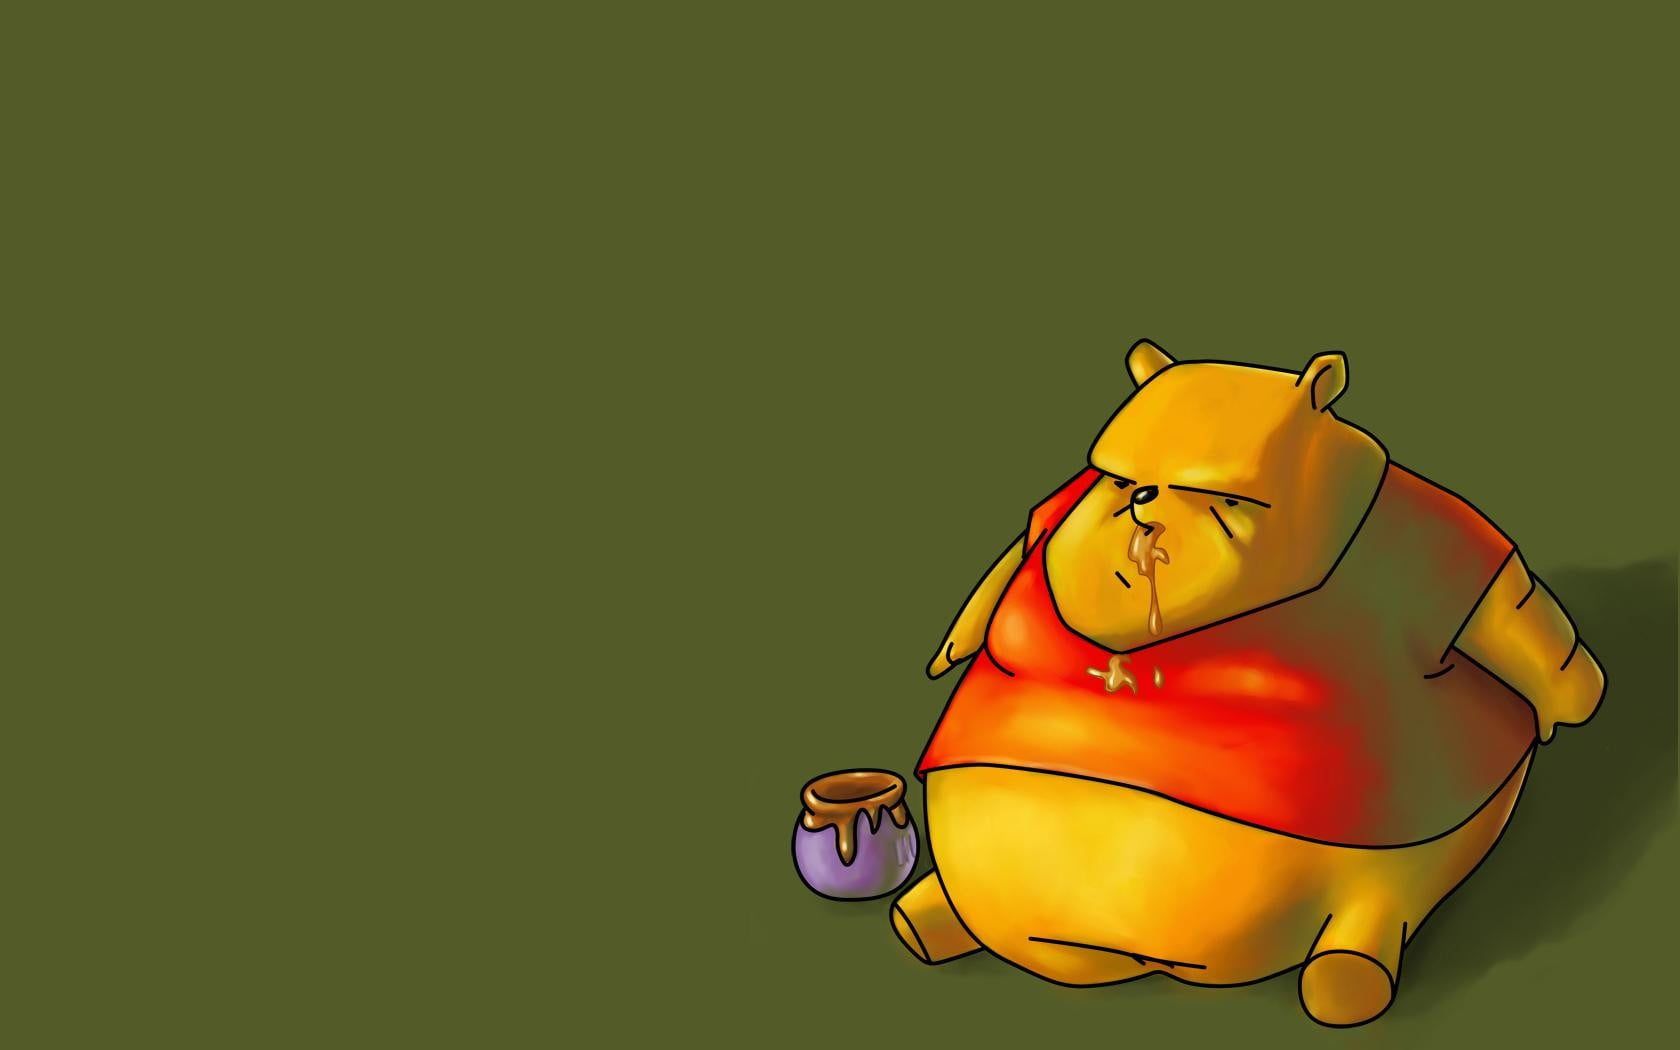 Winnie The Pooh illustration, Winnie the Pooh, humor, Winnie-the-Pooh